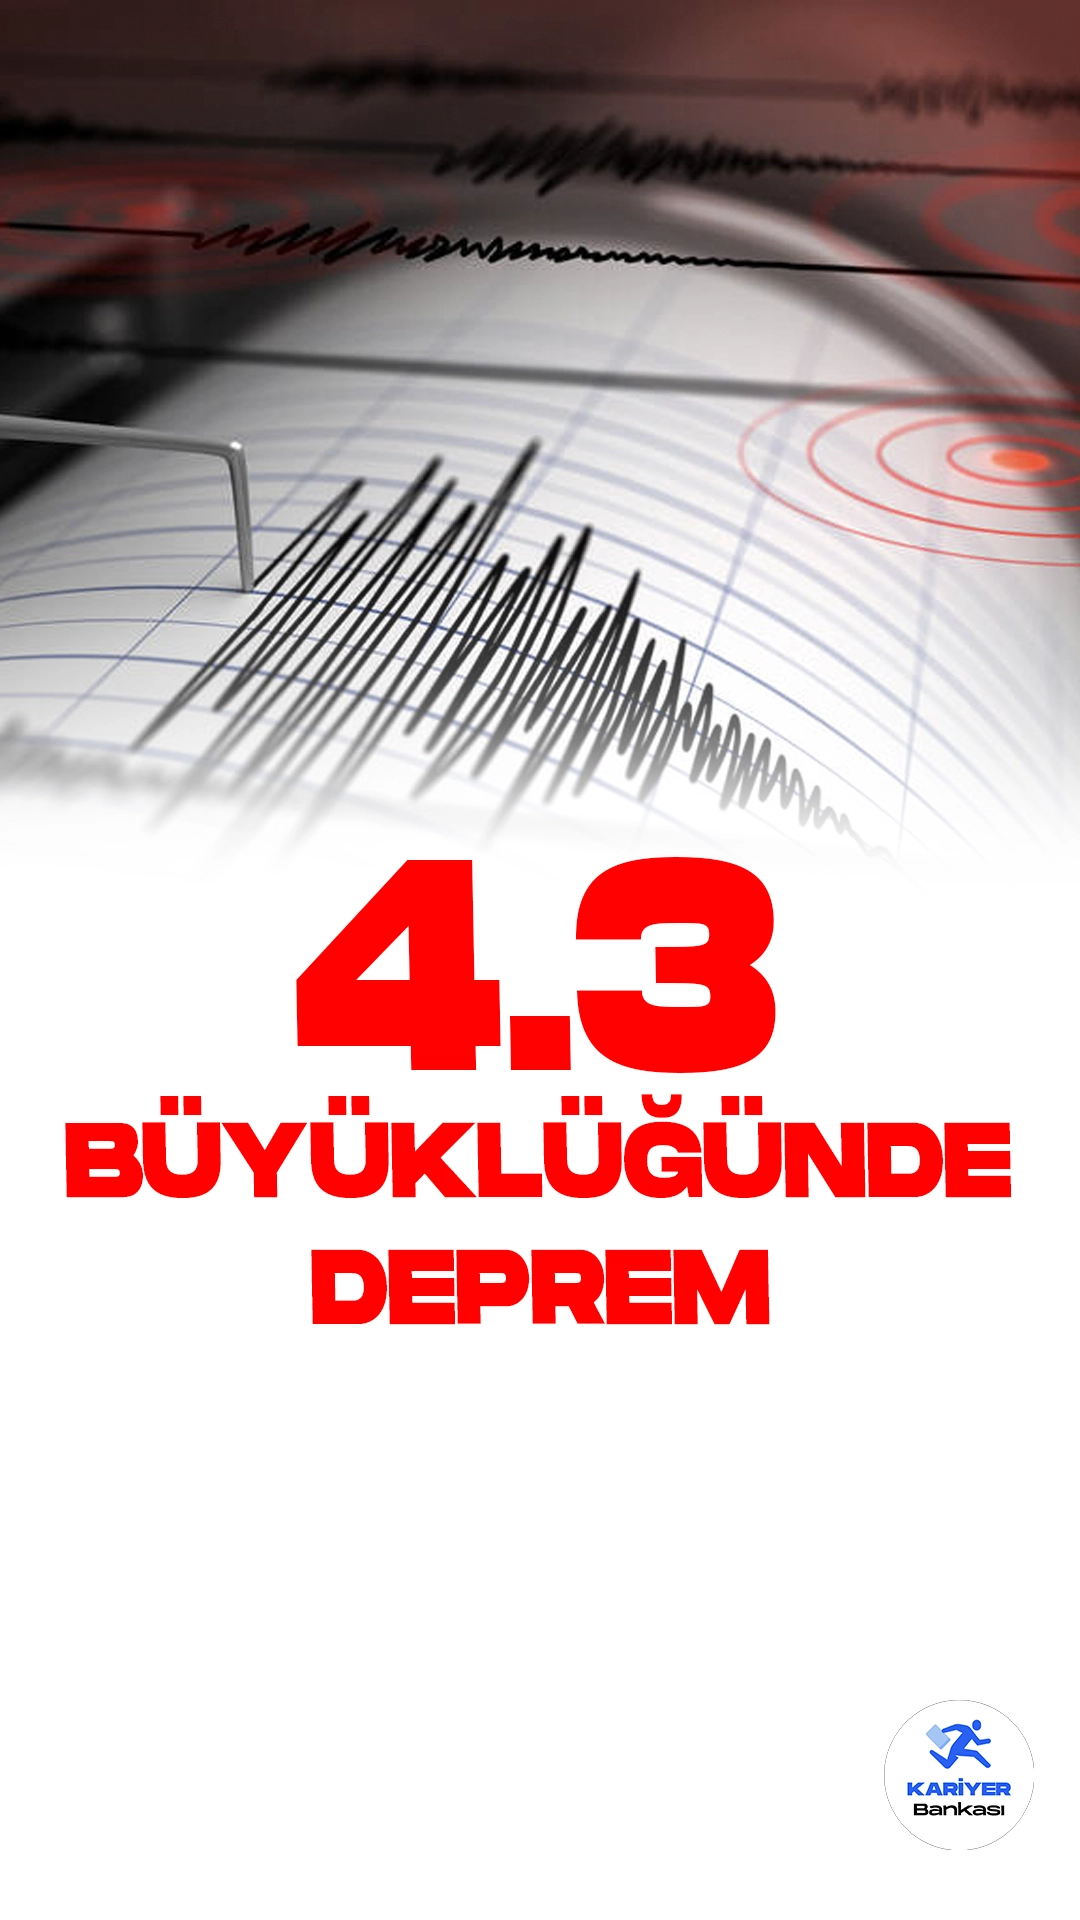 Malatya'da 4.3 Büyüklüğünde Deprem Oldu. İçişleri Bakanlığı Afet ve Acil Durum Yönetimi Başkanlığı Deprem Dairesi resmi sayfasından yayımlanan son dakika duyurusuna göre, Malatya'da 4.3 büyüklüğünde deprem meydana geldi.